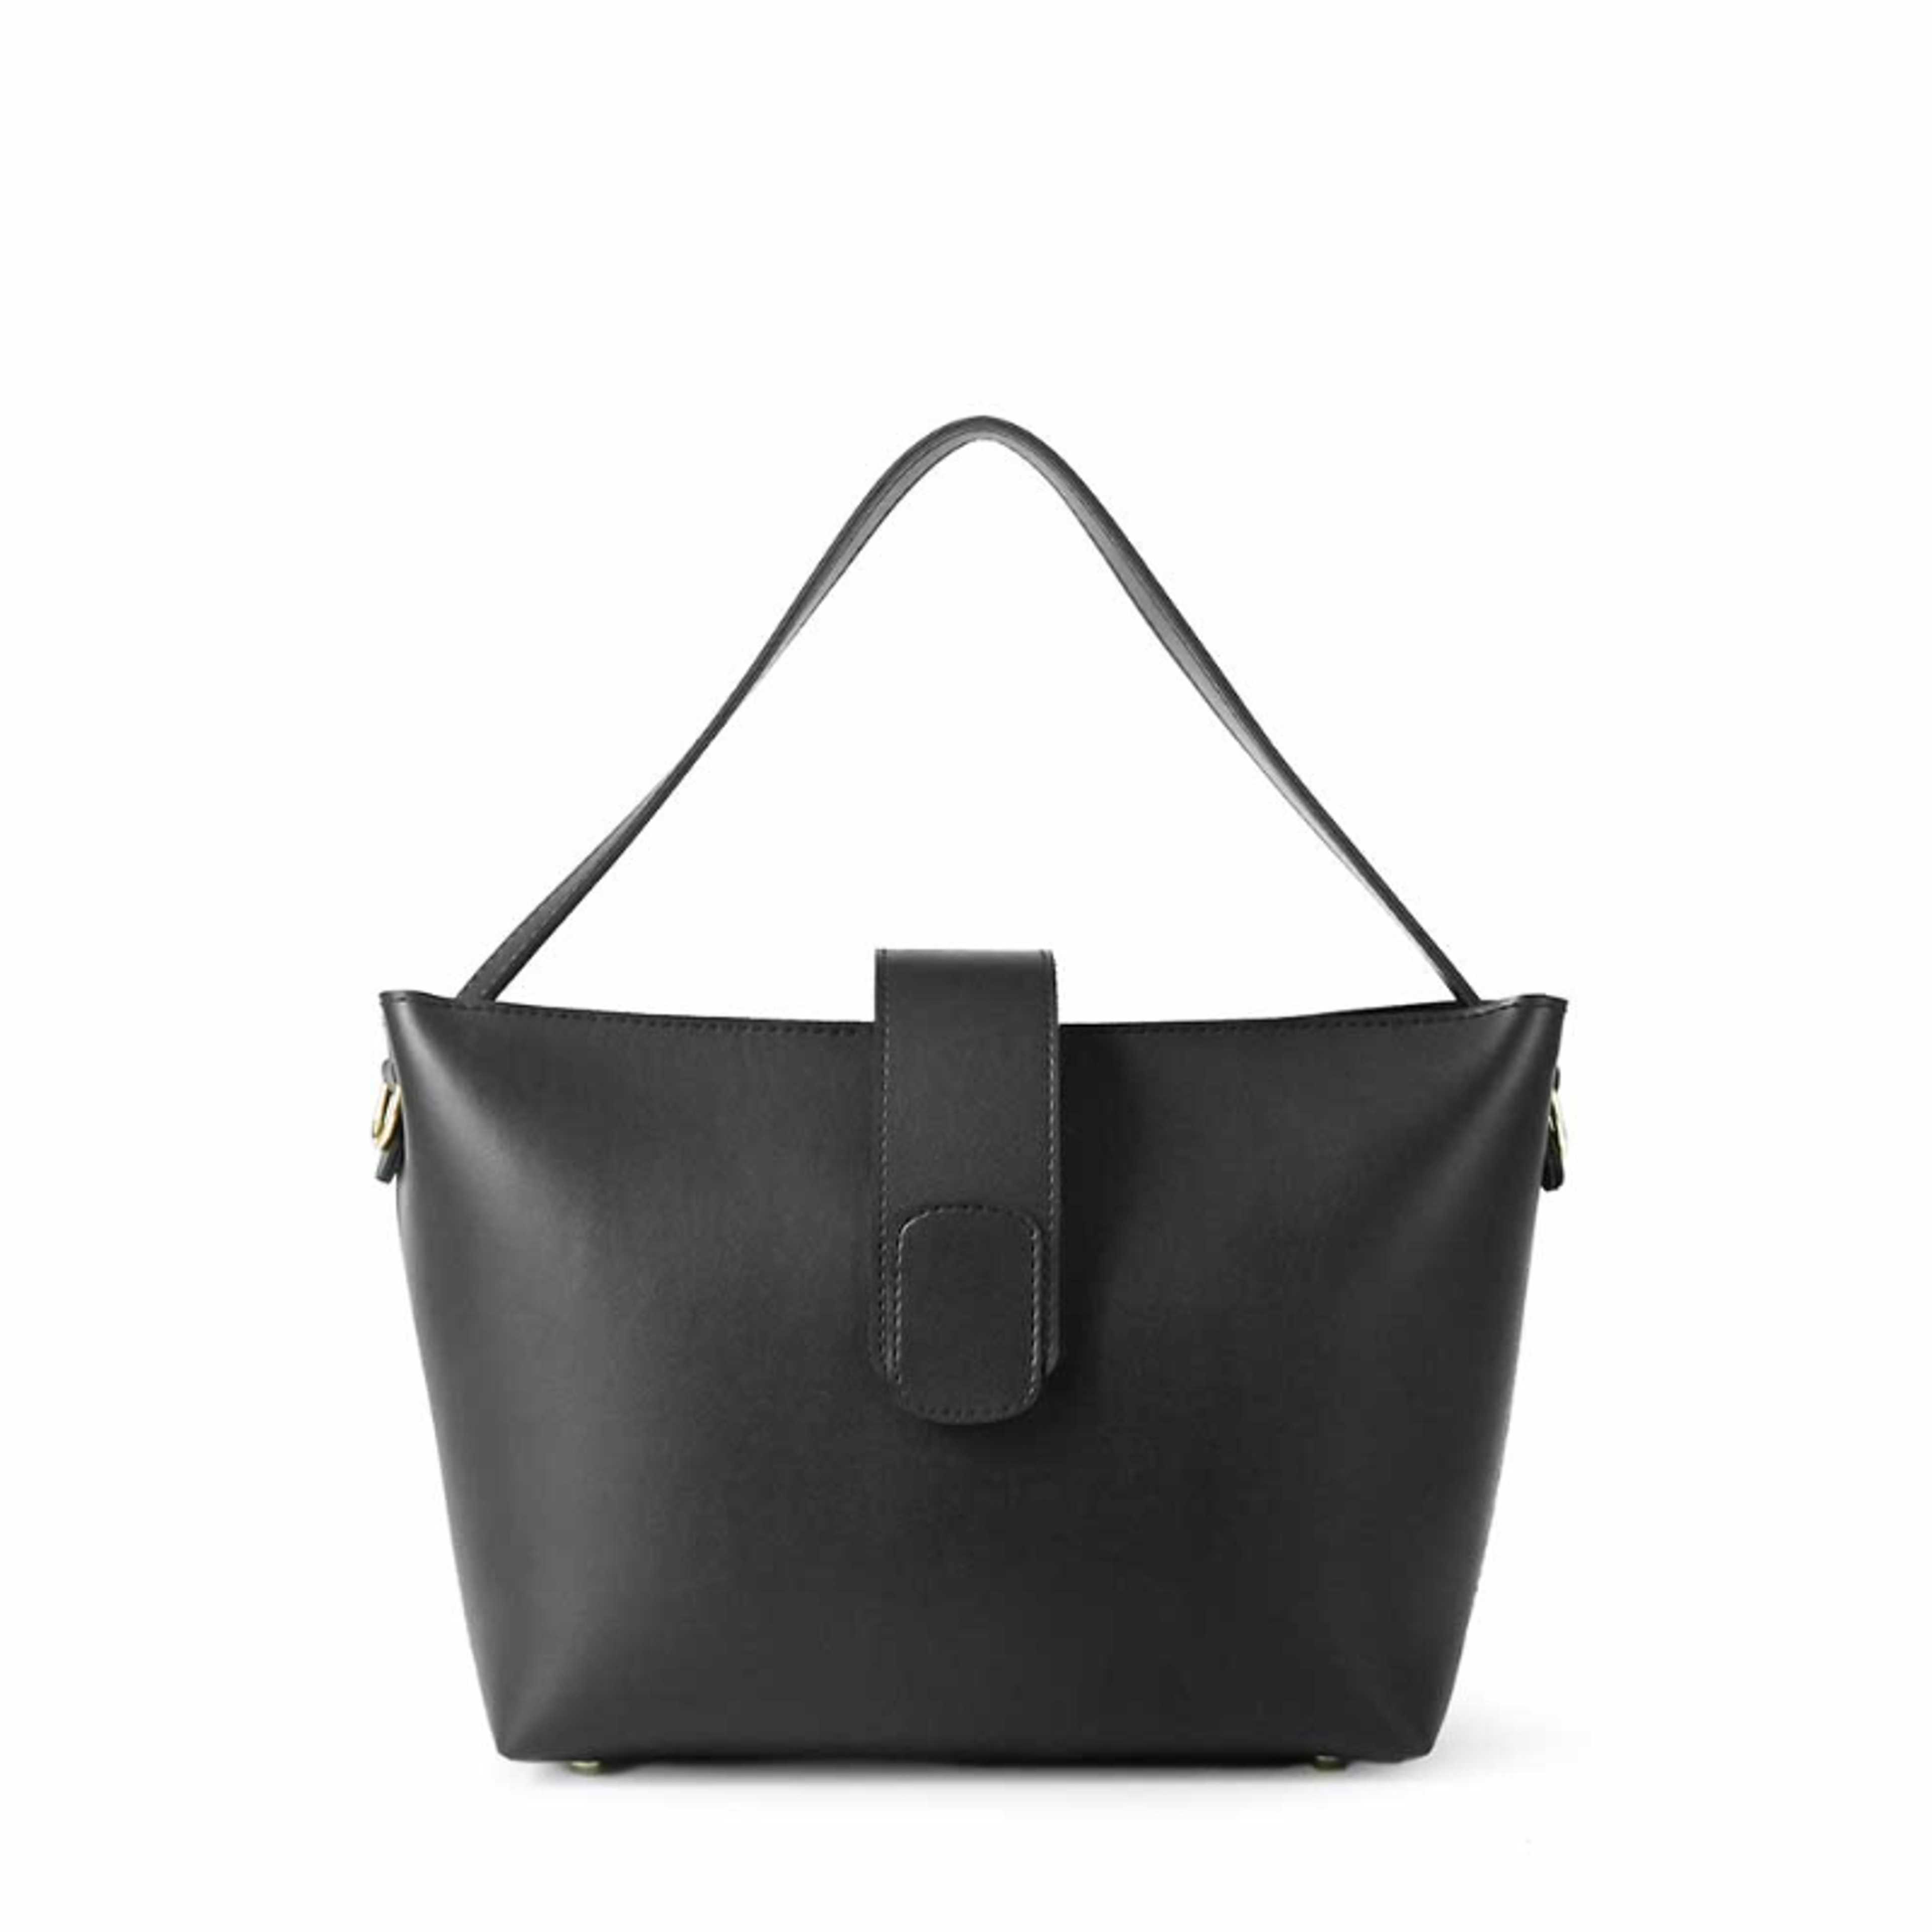 Cora bag (black)